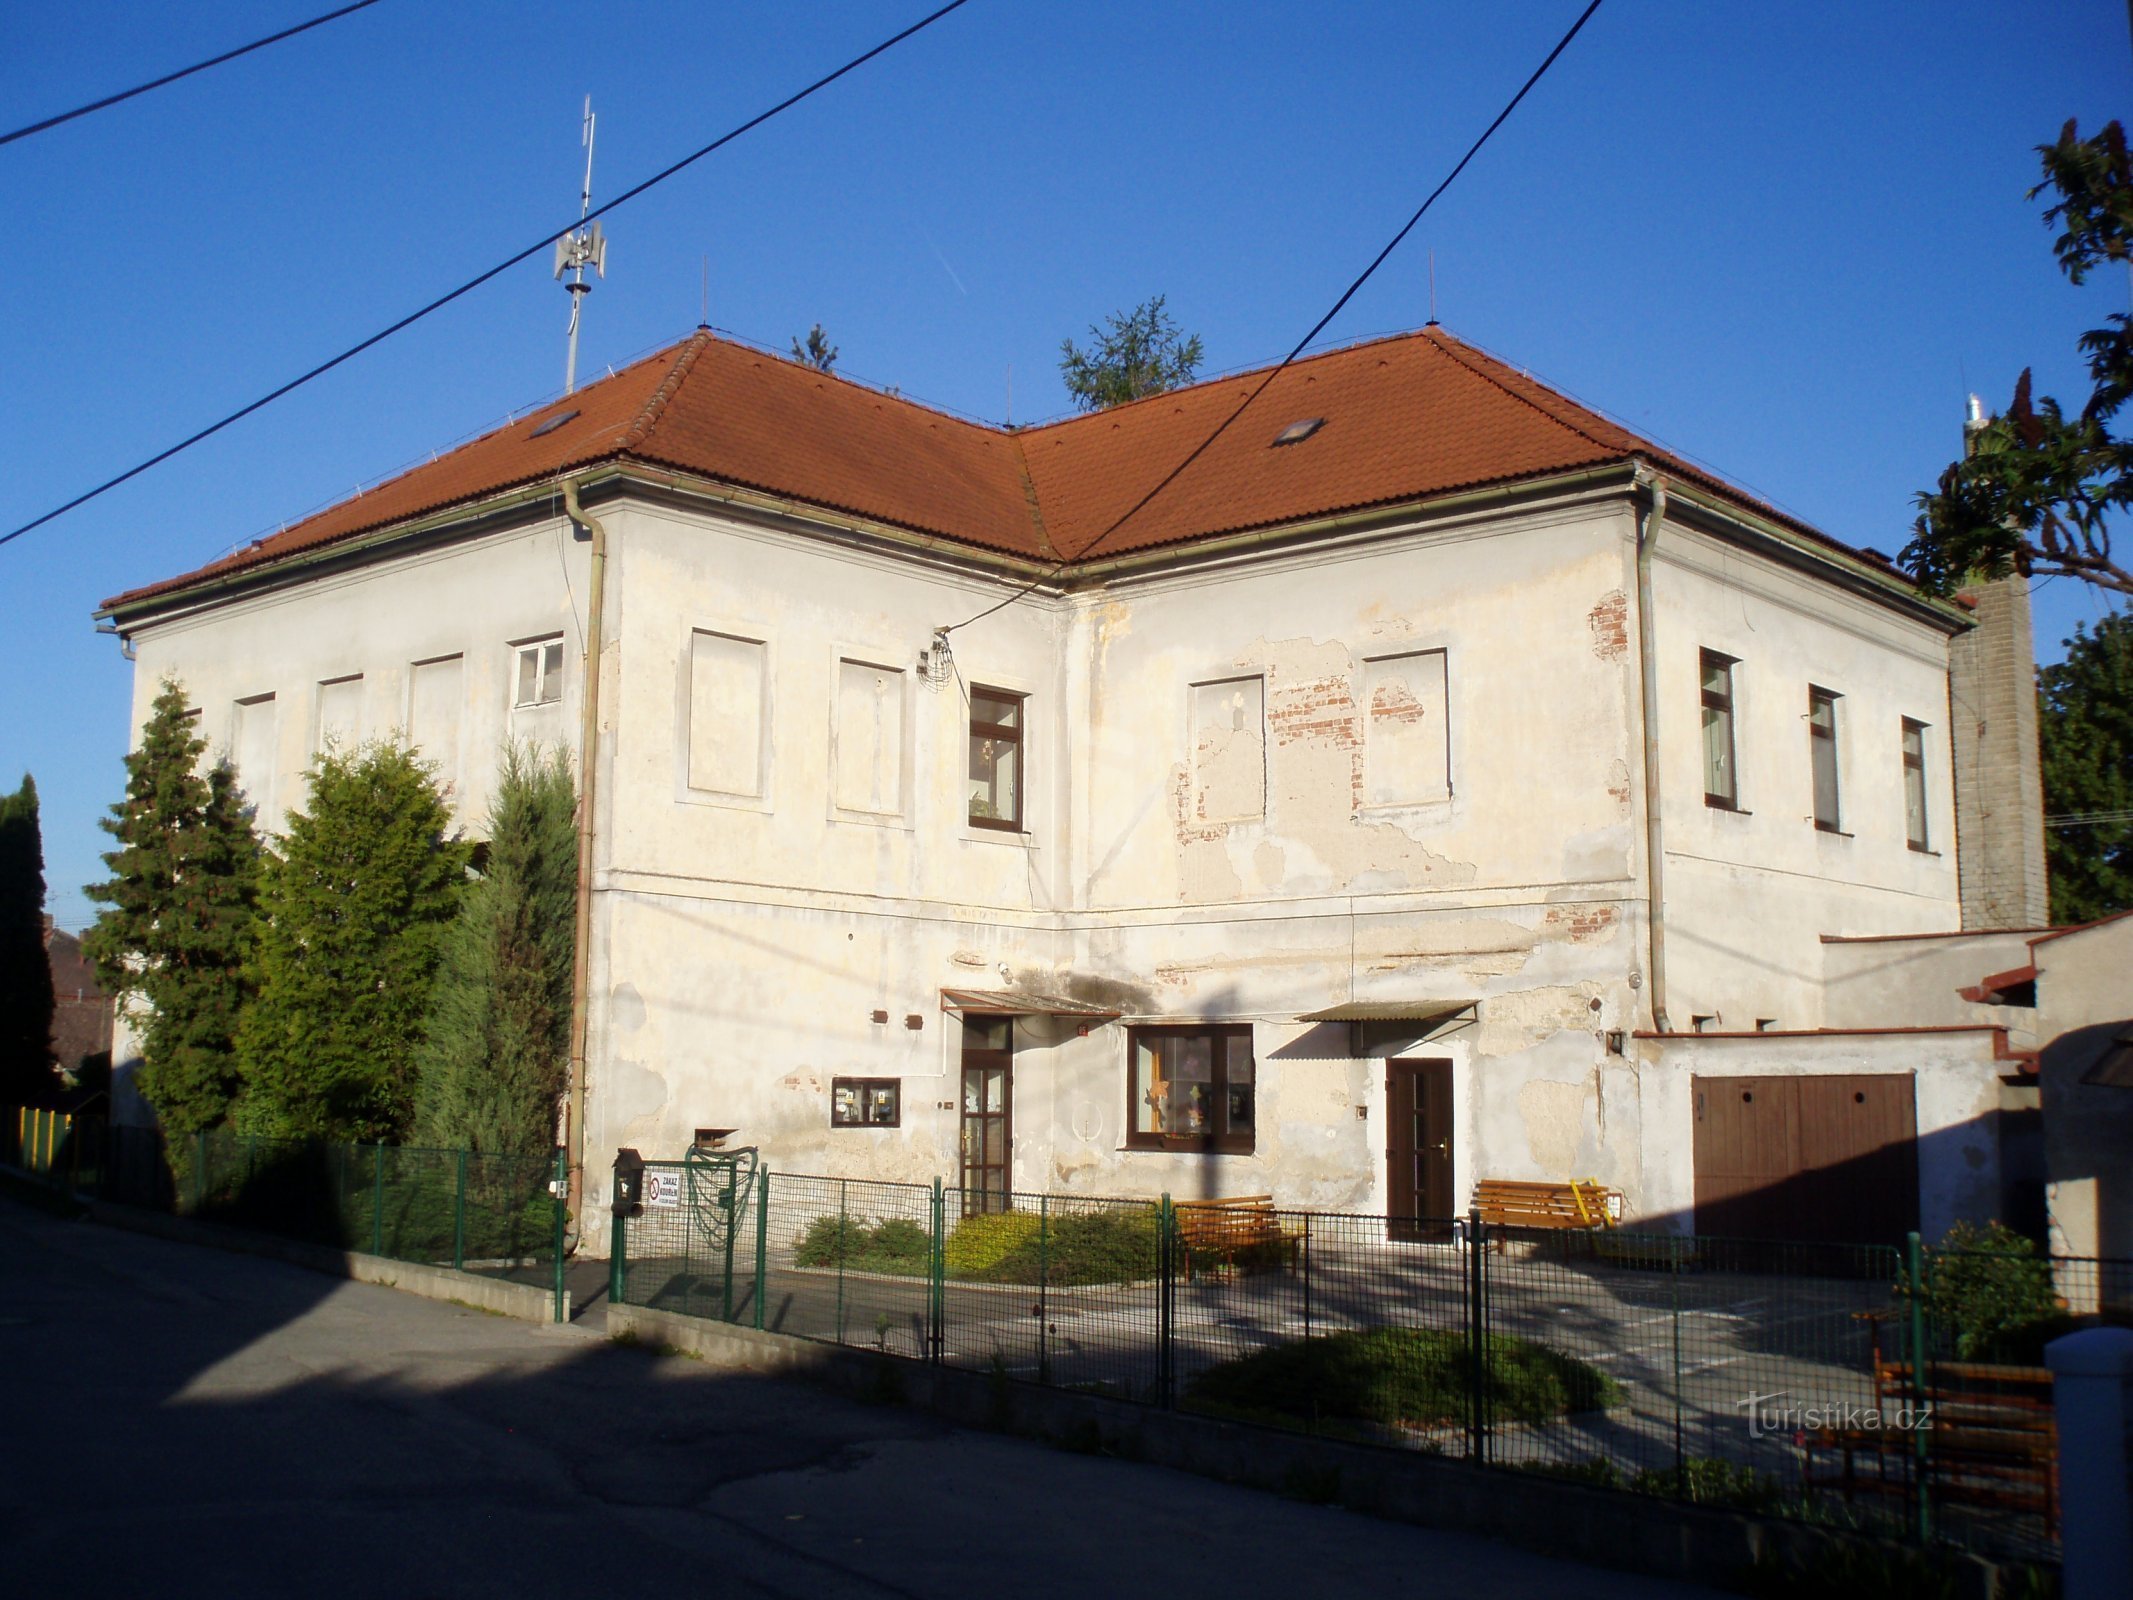 Päiväkoti Slatinassa ennen jälleenrakennusta (Hradec Králové)